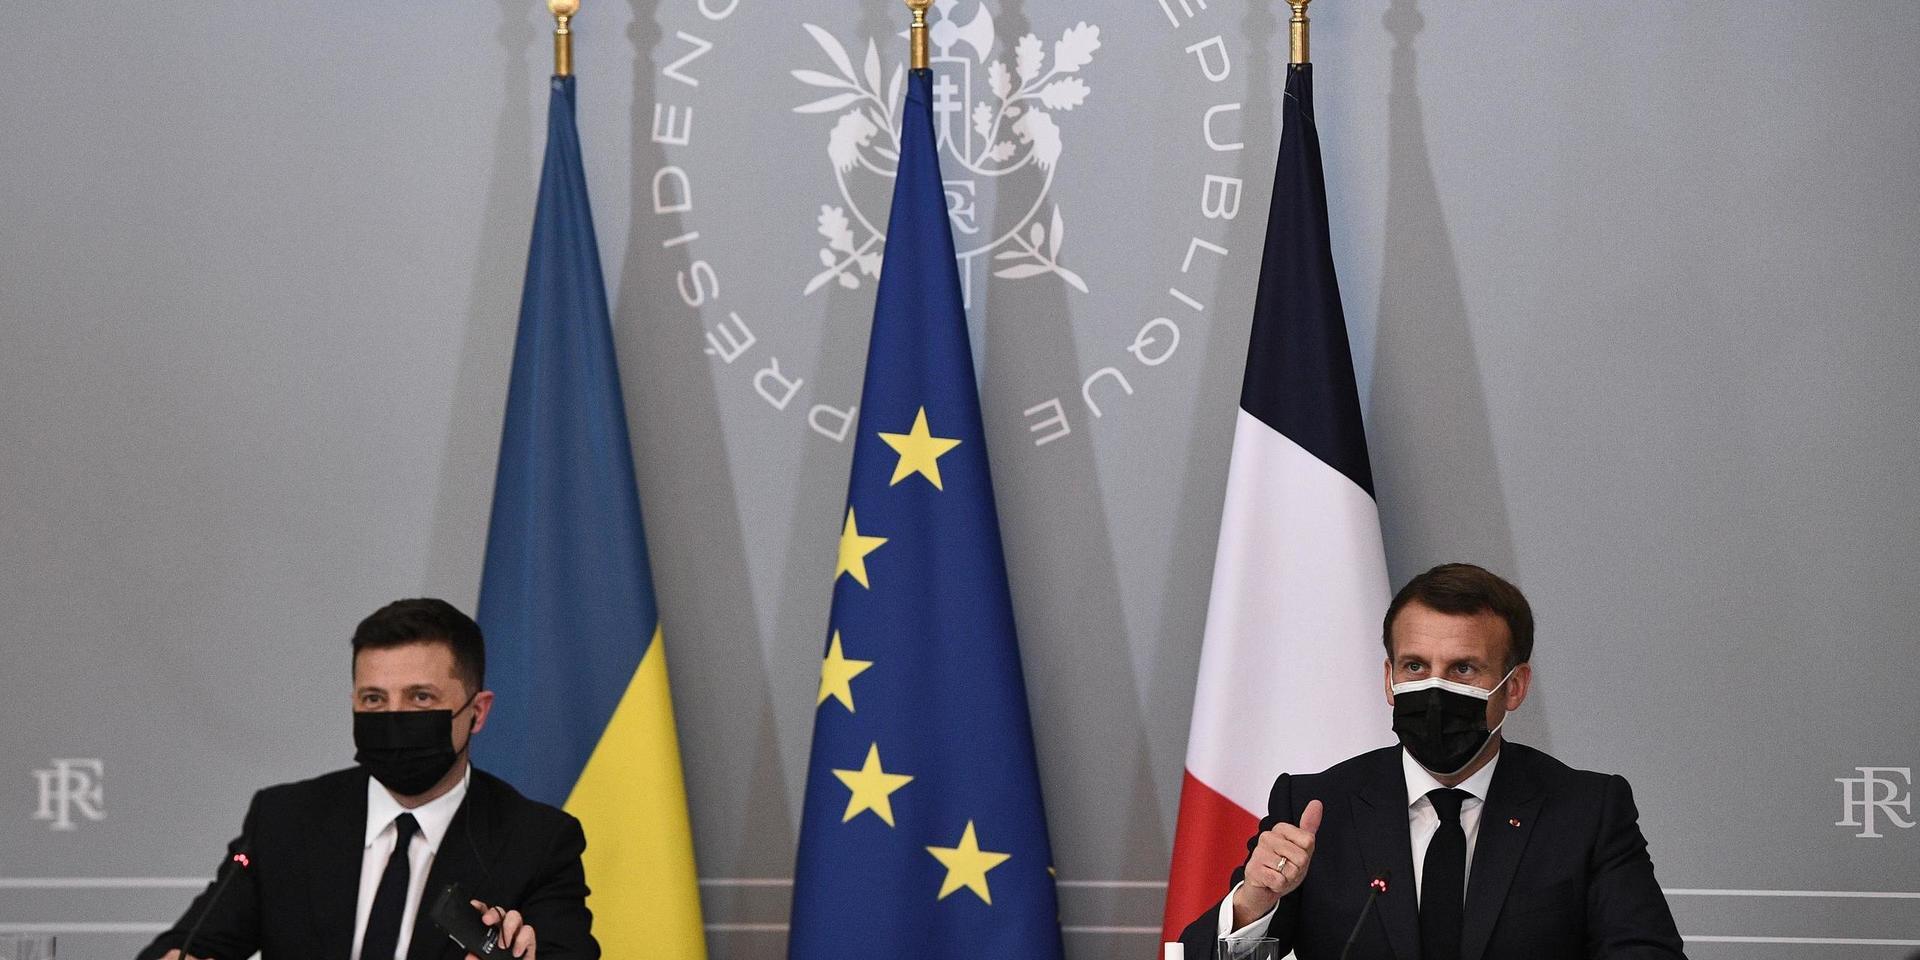 Frankrikes president Emmanuel Macron, till höger, och Ukrainas president Volodymyr Zelensky höll lunchmöte i Paris på fredagen. Tysklands förbundskansler Angela Merkel deltog via videolänk. De tre ledarna vill få till stånd ett toppmöte med Rysslands president Vladimir Putin.